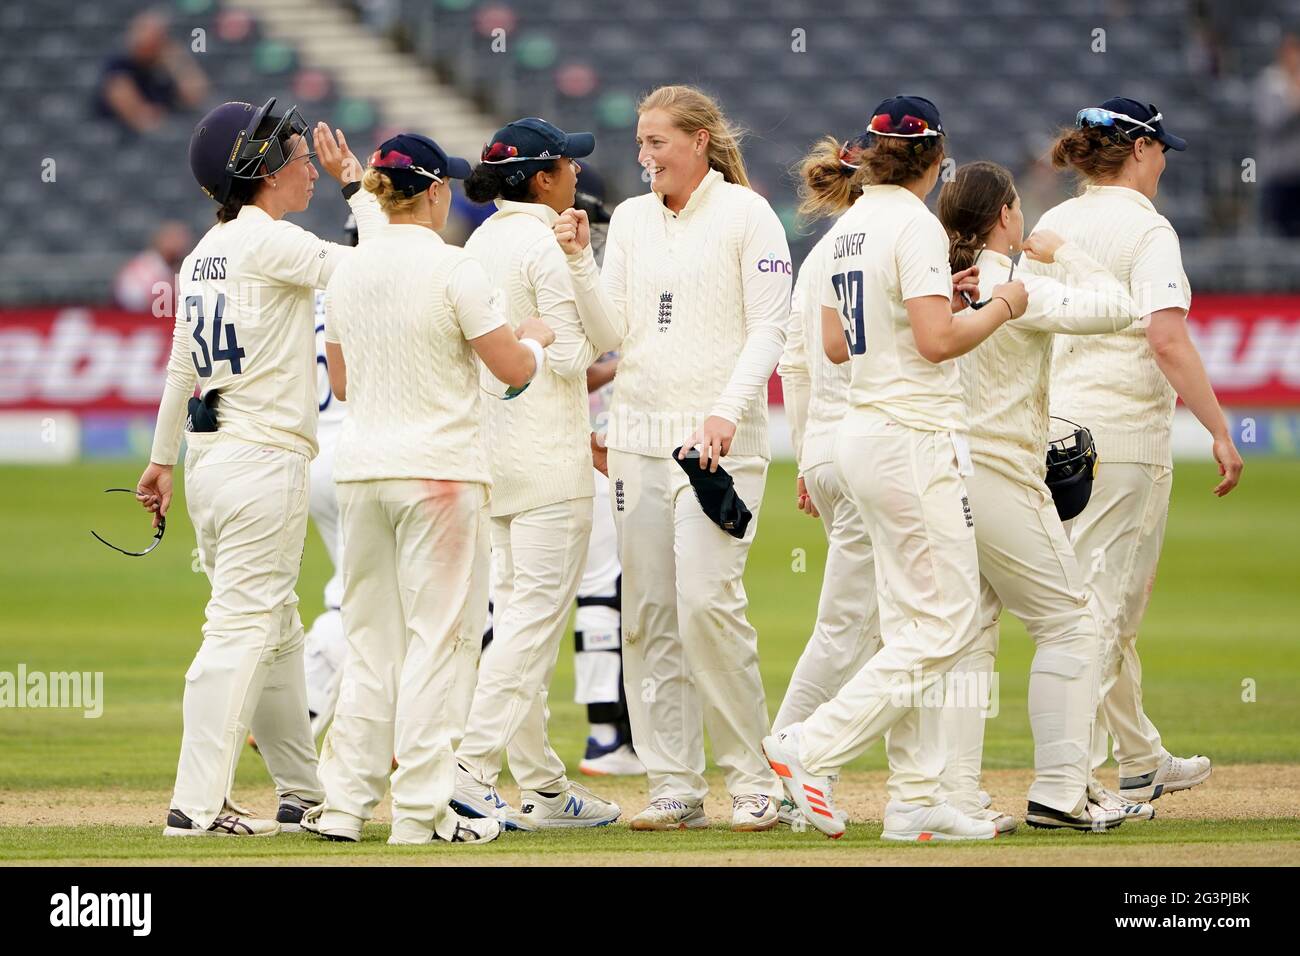 Die englische Sophie Ecclestone feiert am Ende des Spiels am zweiten Tag des Women's International Test Matches auf dem Bristol County Ground. Bilddatum: Donnerstag, 17. Juni 2021. Stockfoto